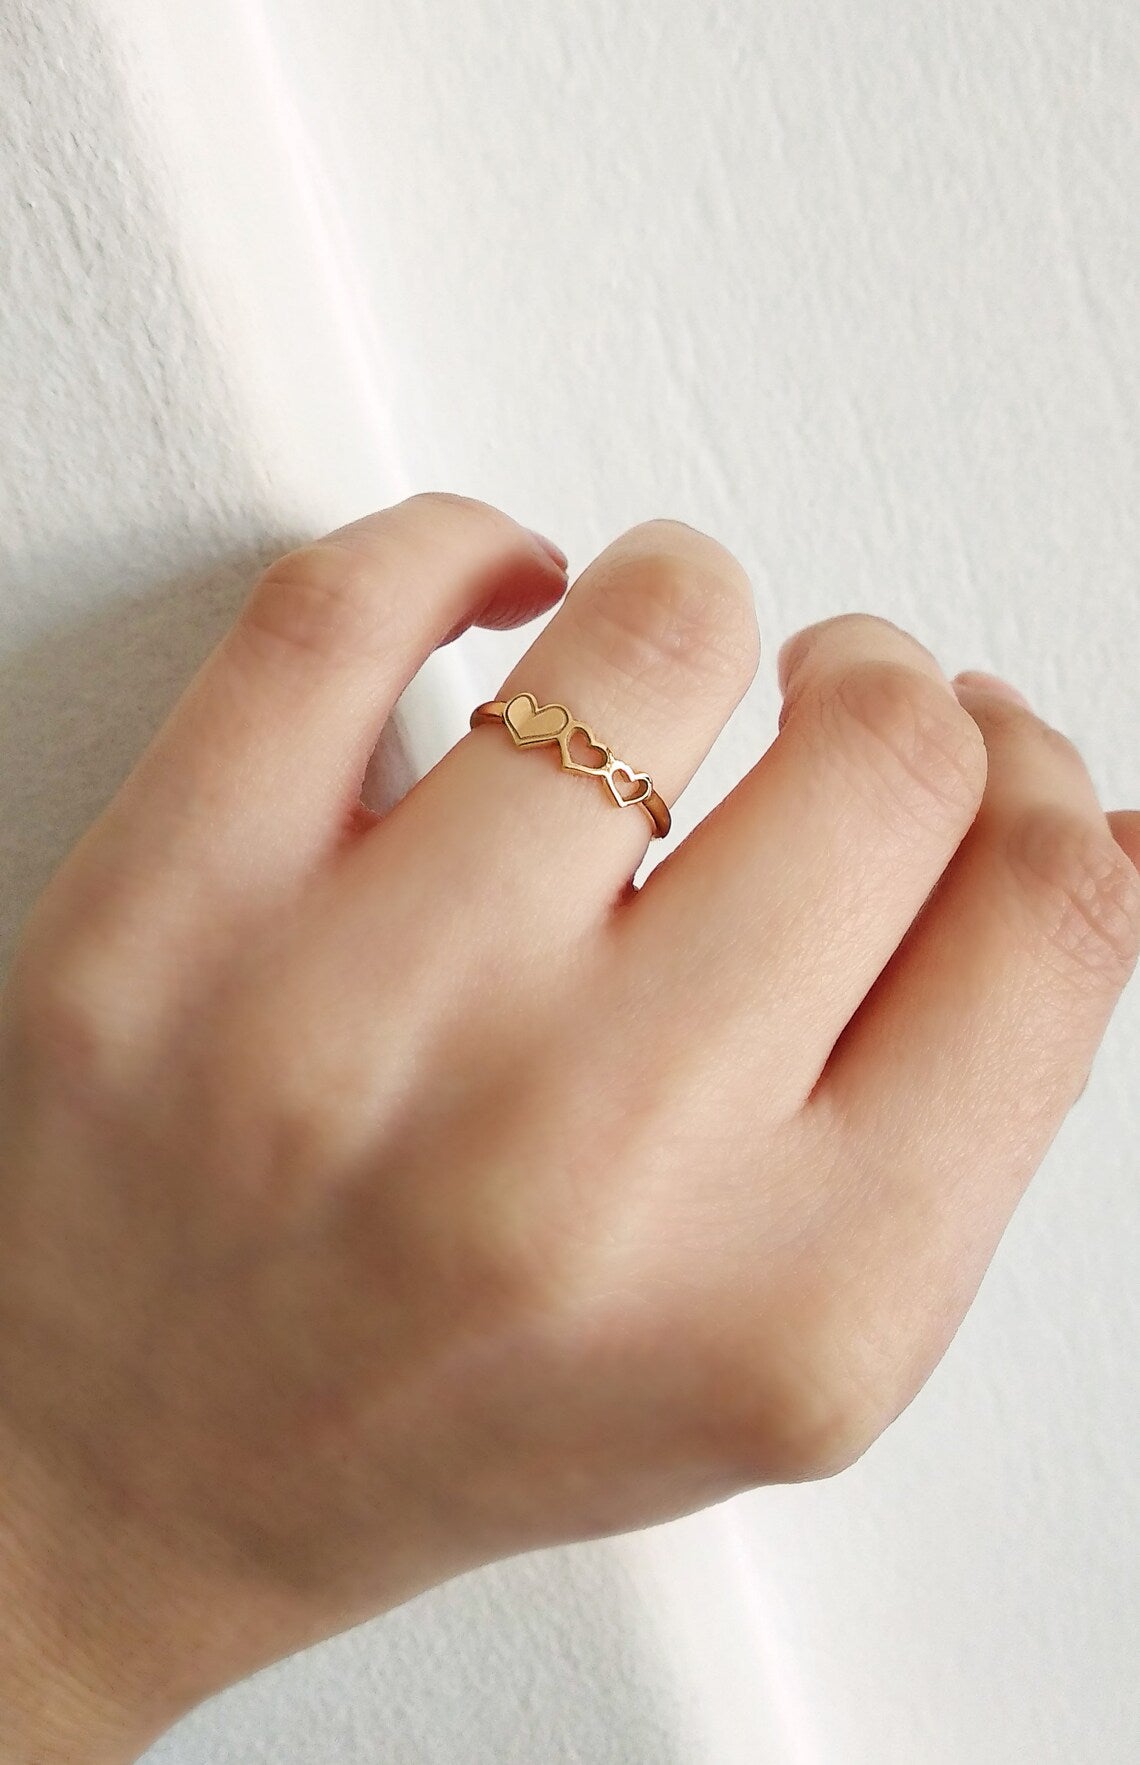 Triple Heart Minimal Promise Rings For Women - 14k Gold Vermeil Rings